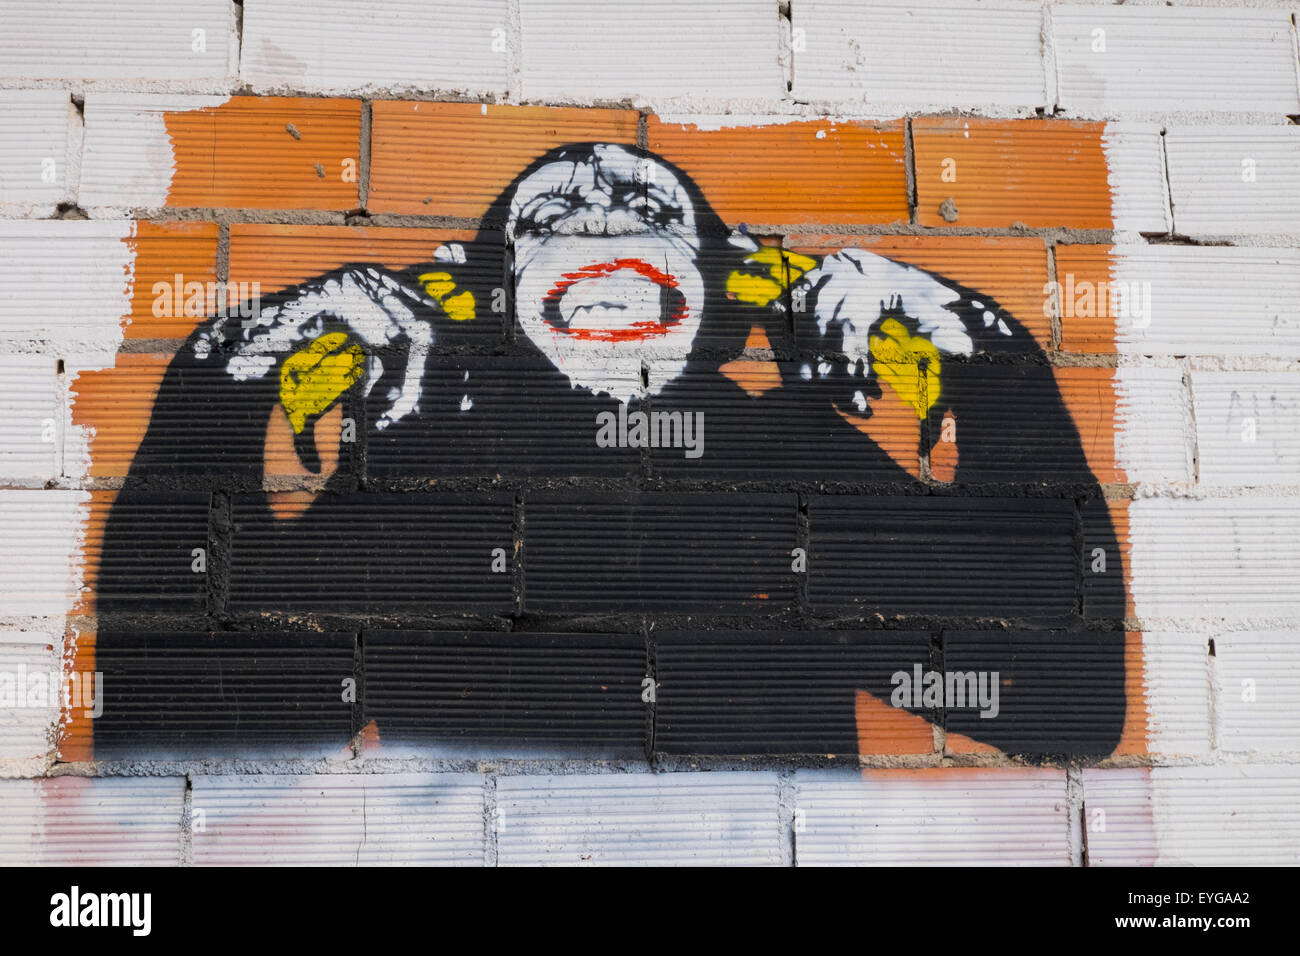 Exemple de street art urbain graffiti - image d'un chimpanzé à l'aide de pulvérisation de peinture Banque D'Images